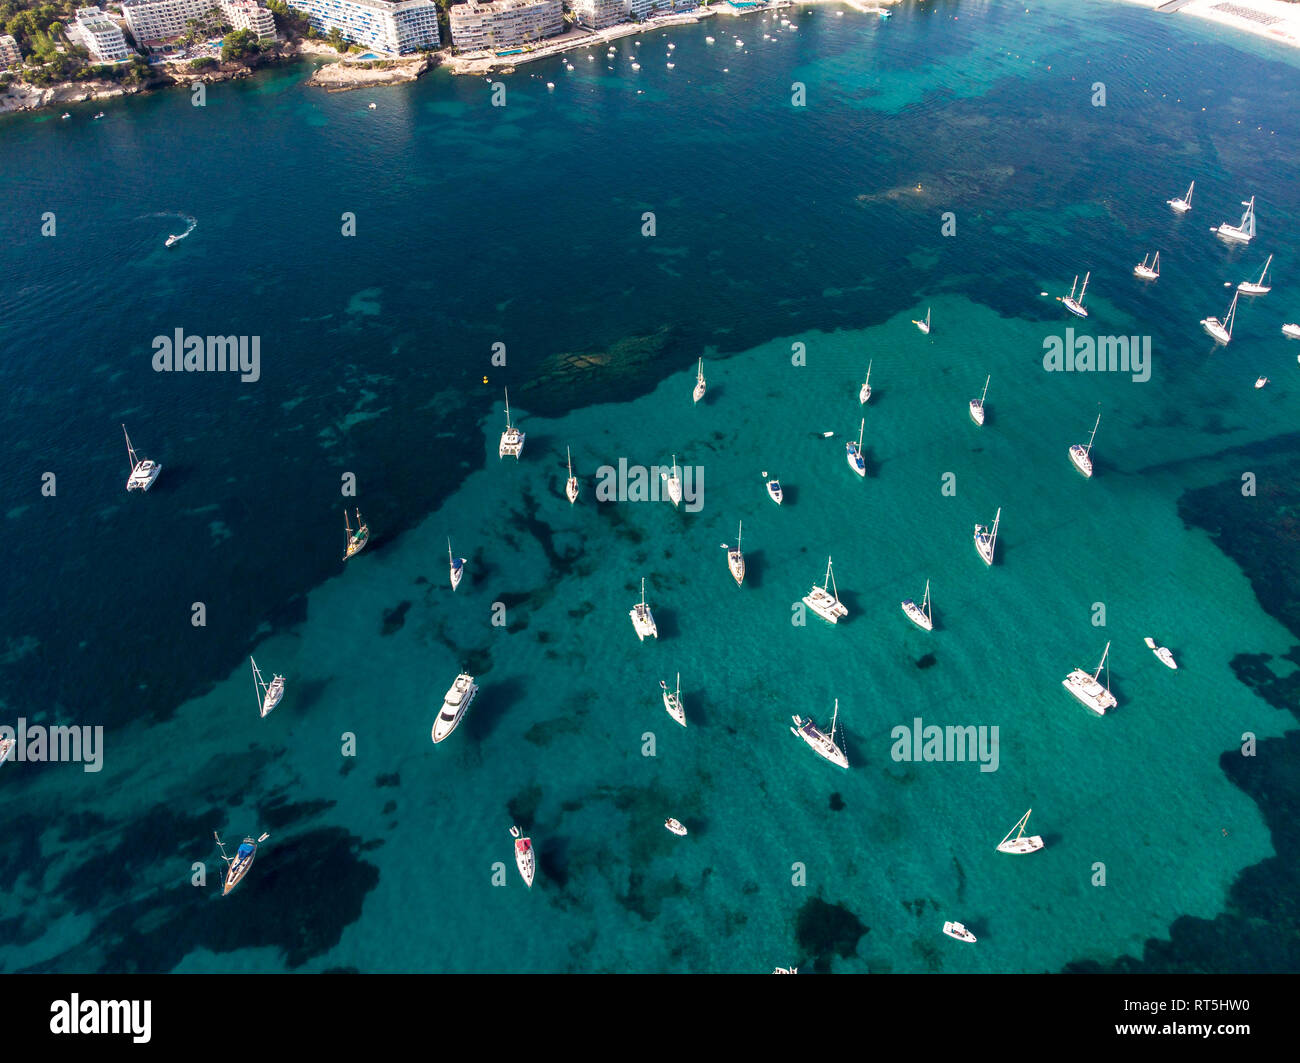 Spain, Baleares, Mallorca, Calvia region, Aerial view of Santa ponca, marina Stock Photo